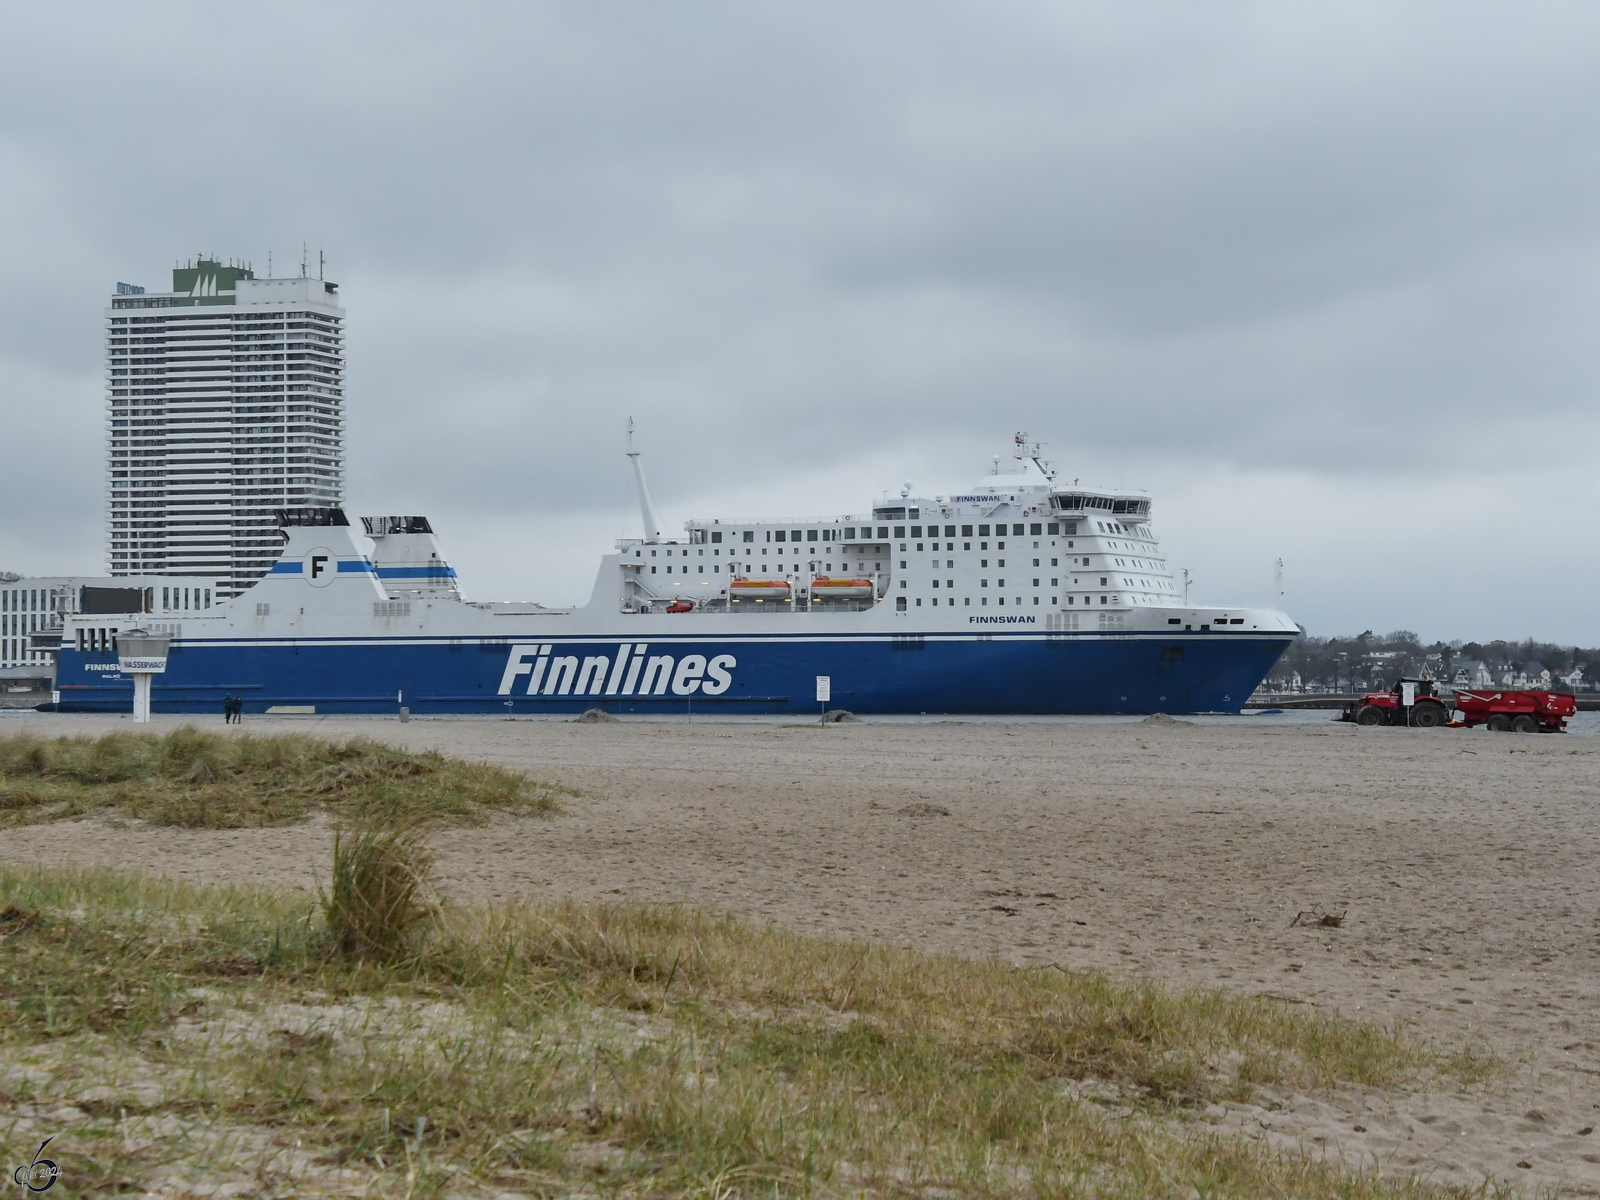 Anfang April 2024 verließ das Fährschiff FINNSWAN (IMO: 9336256) den Hafen von Travemünde.